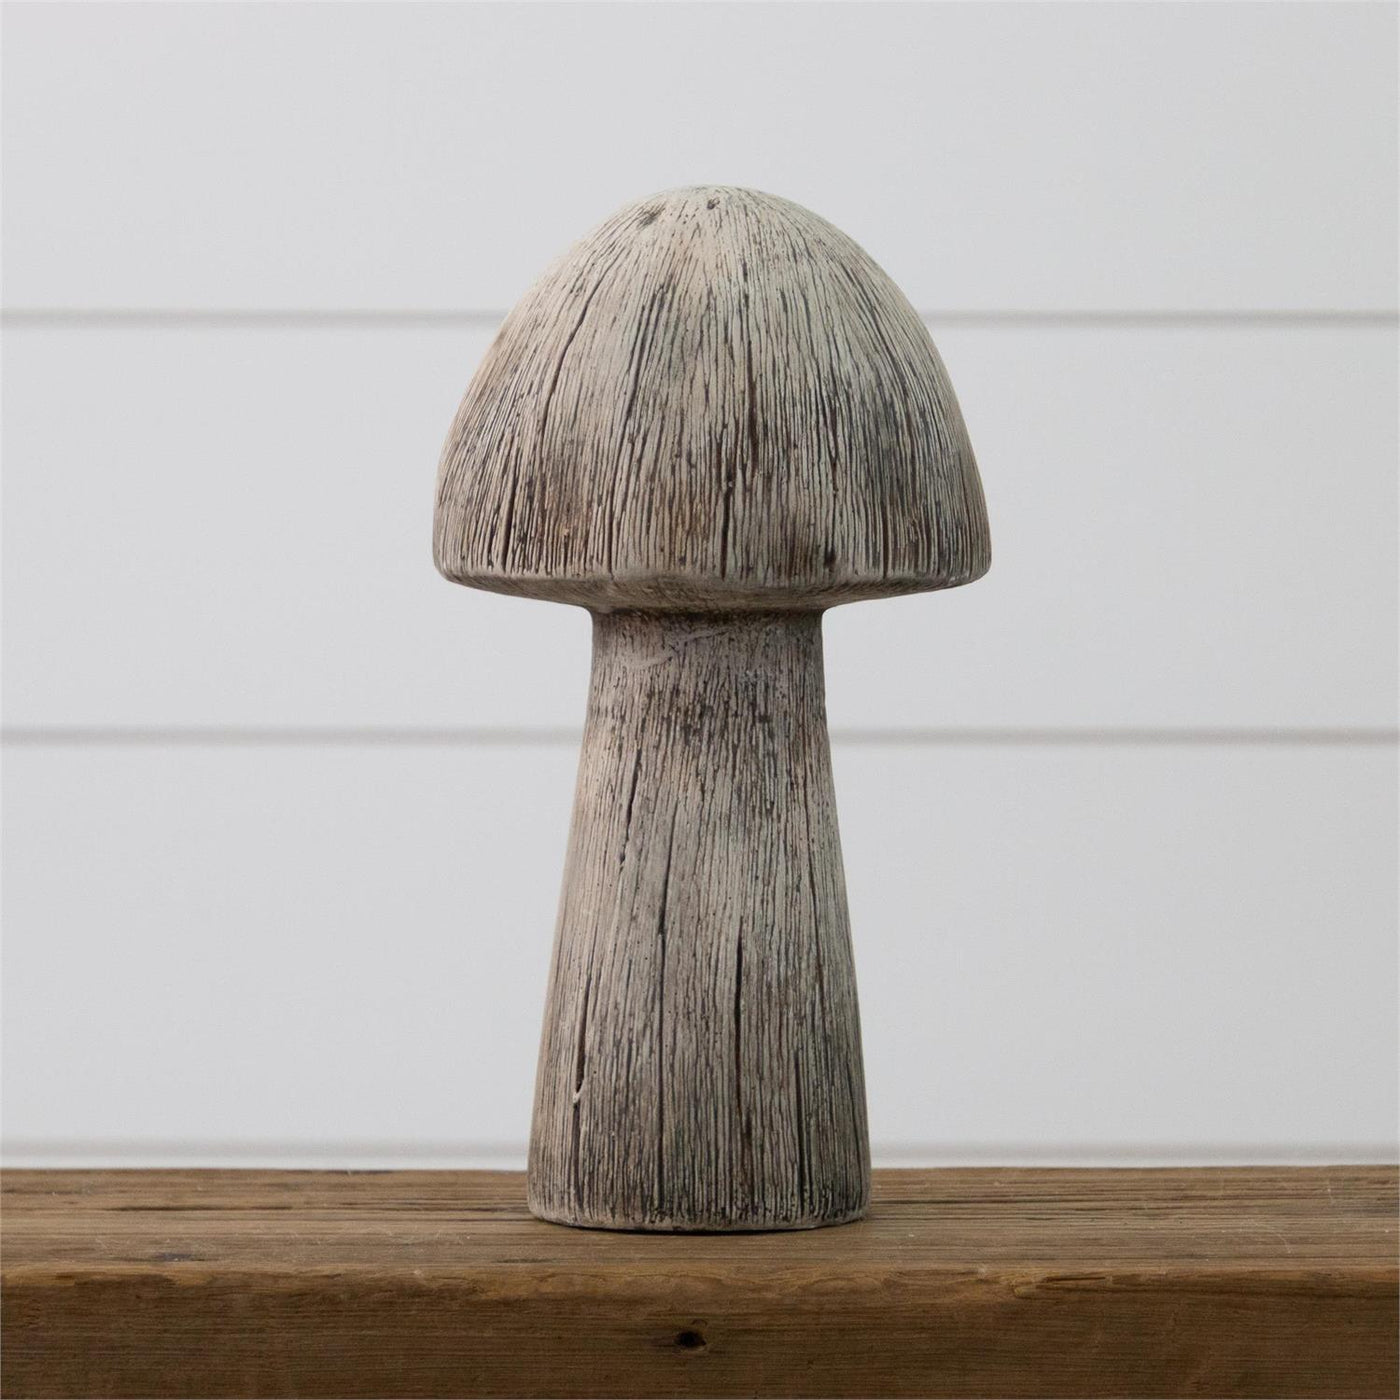 Textured Mushroom Cement Figure 12" H